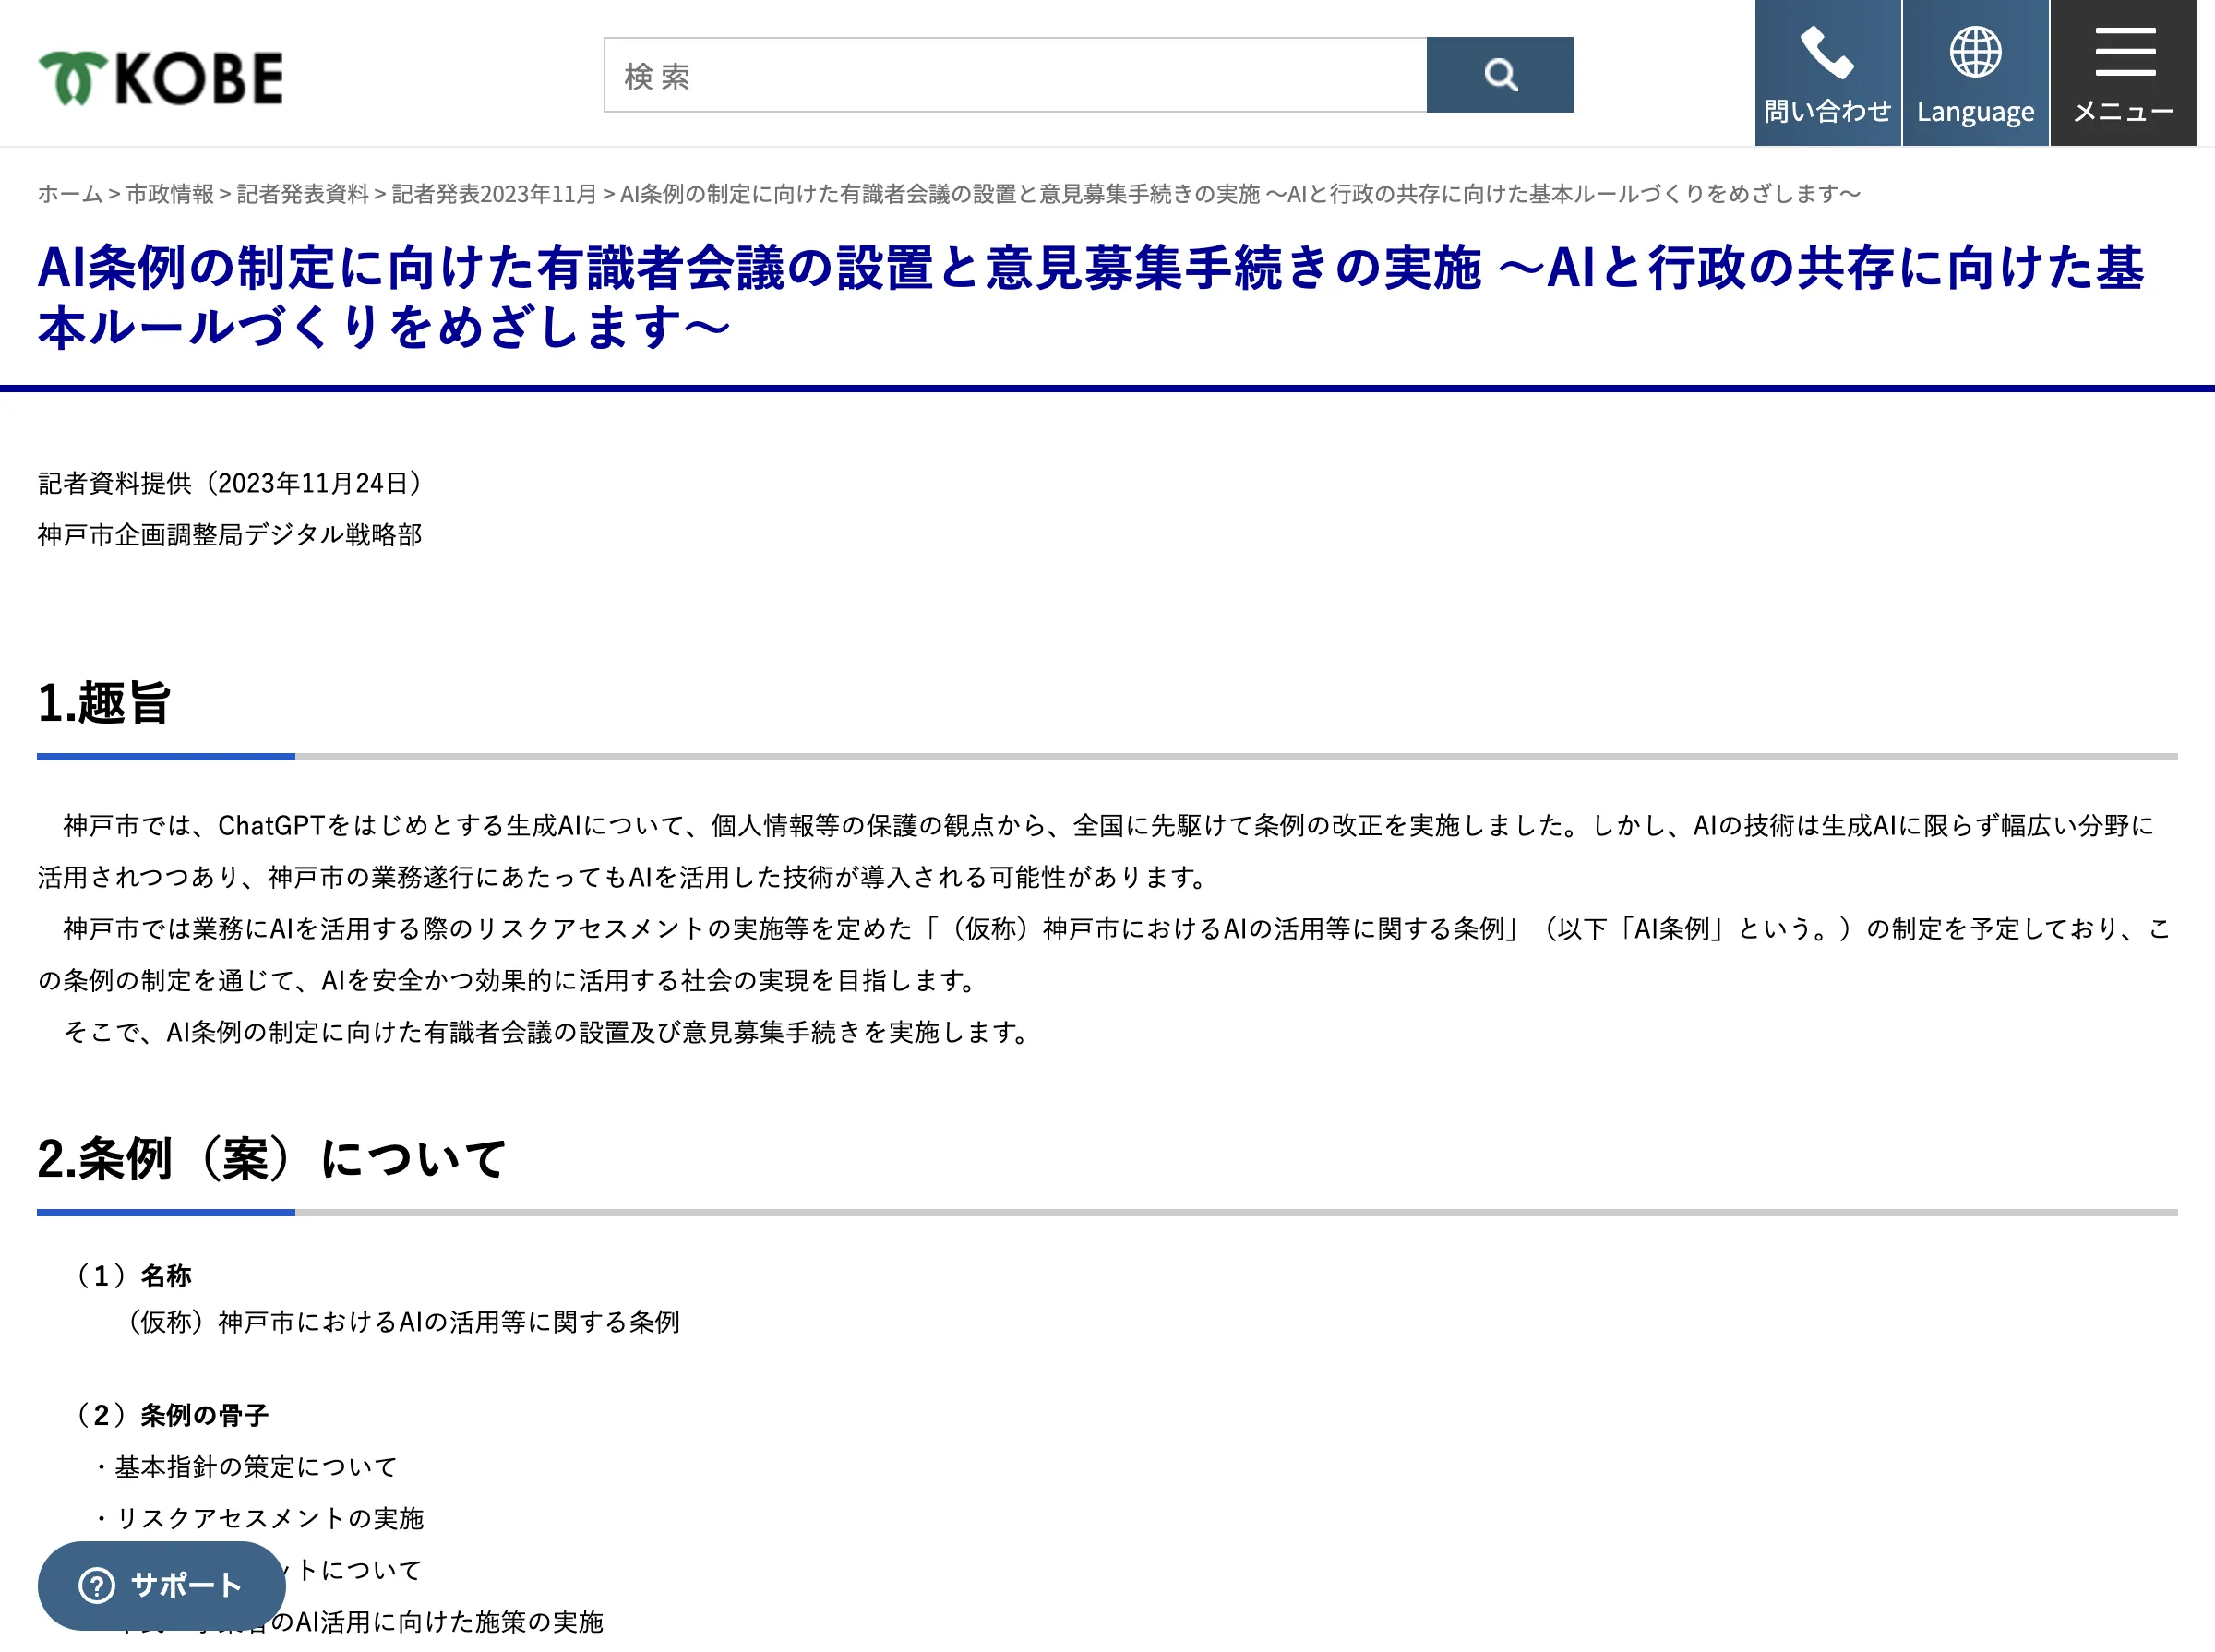 神戸市におけるAI条例策定へ向けた動き：有識者会議設置と市民意見募集の開始の紹介画像